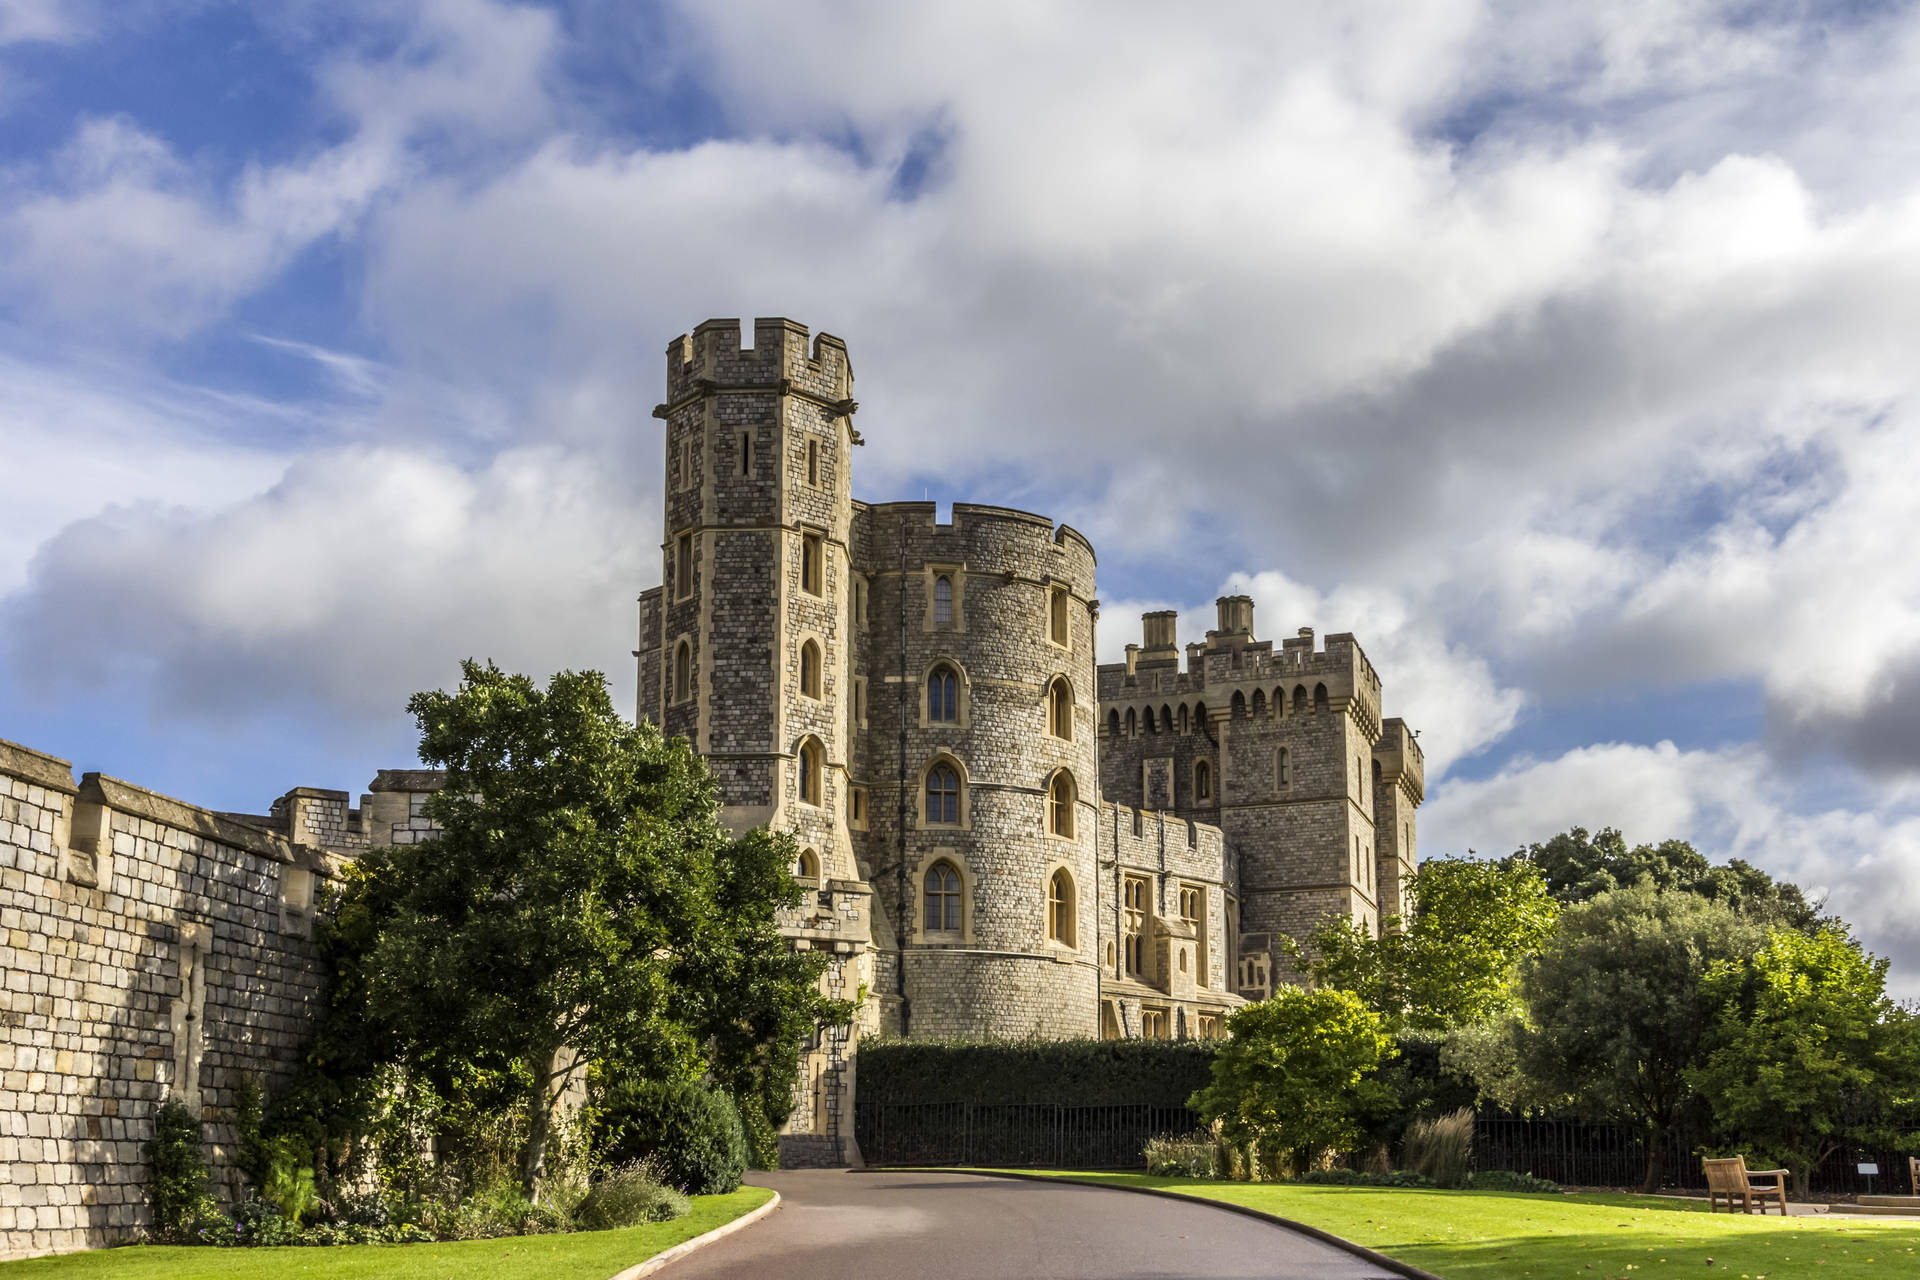 Descrizioneil Maestoso Castello Di Windsor Immerso Nella Rigogliosa Vegetazione Con Uno Spettacolare Cielo Nuvoloso. Sfondo